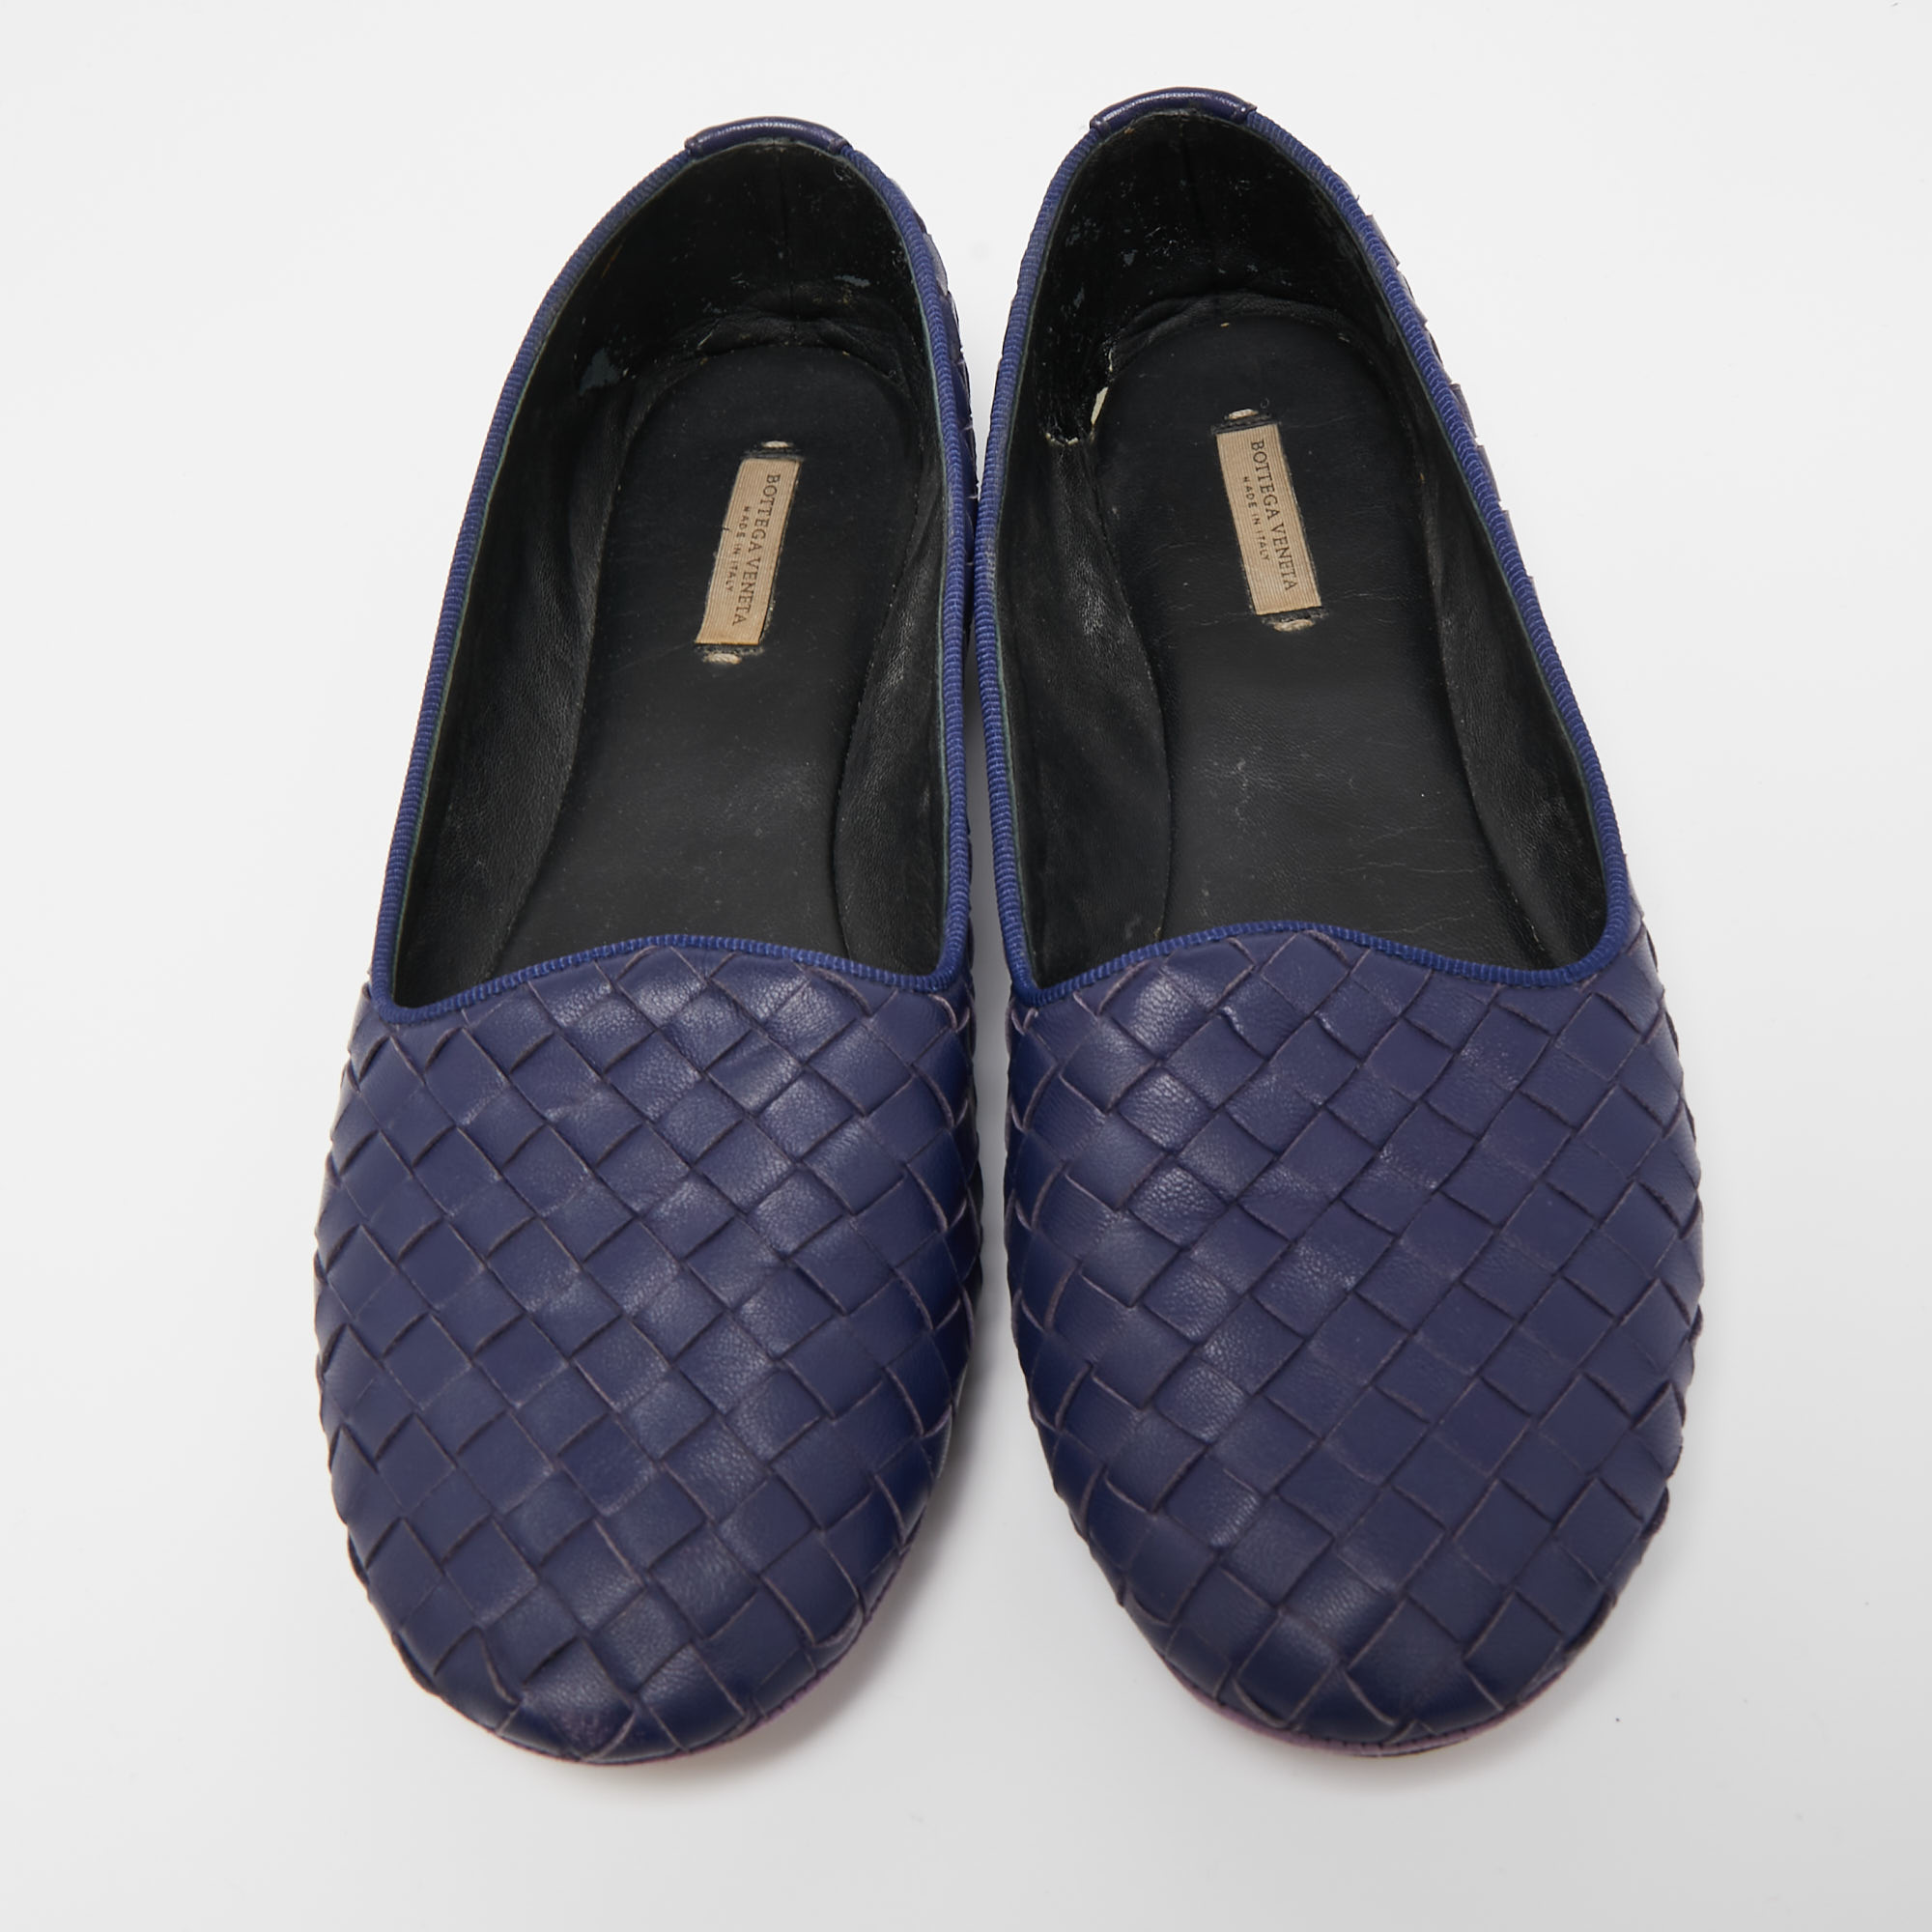 Bottega Veneta Navy Blue Intrecciato Leather Smoking Slippers Size 37